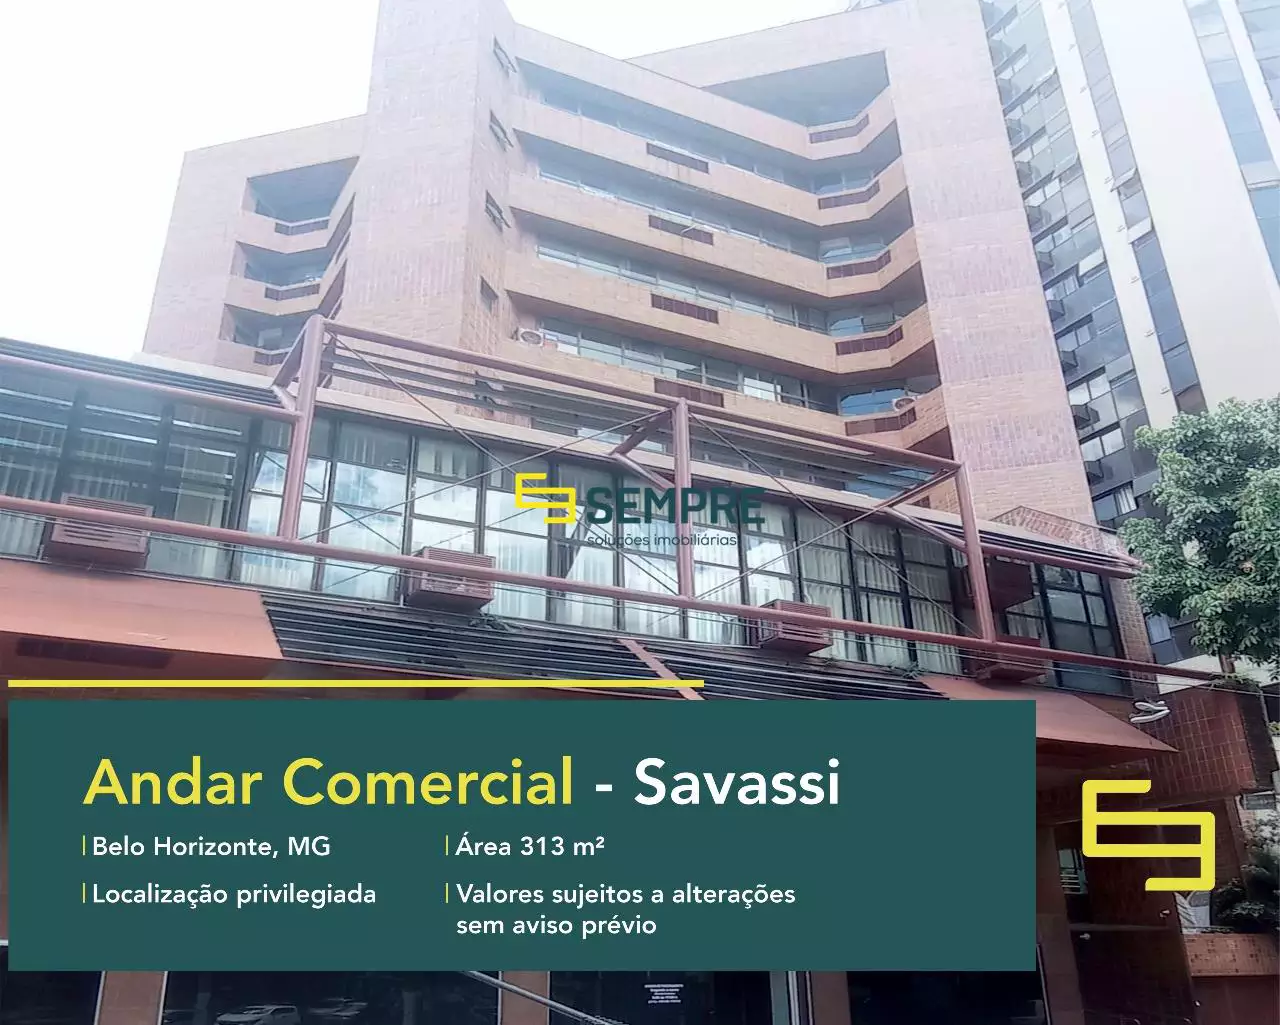 Andar Pilotis para alugar na Savassi em Belo Horizonte, excelente localização. O estabelecimento comercial conta com área de 313 m².